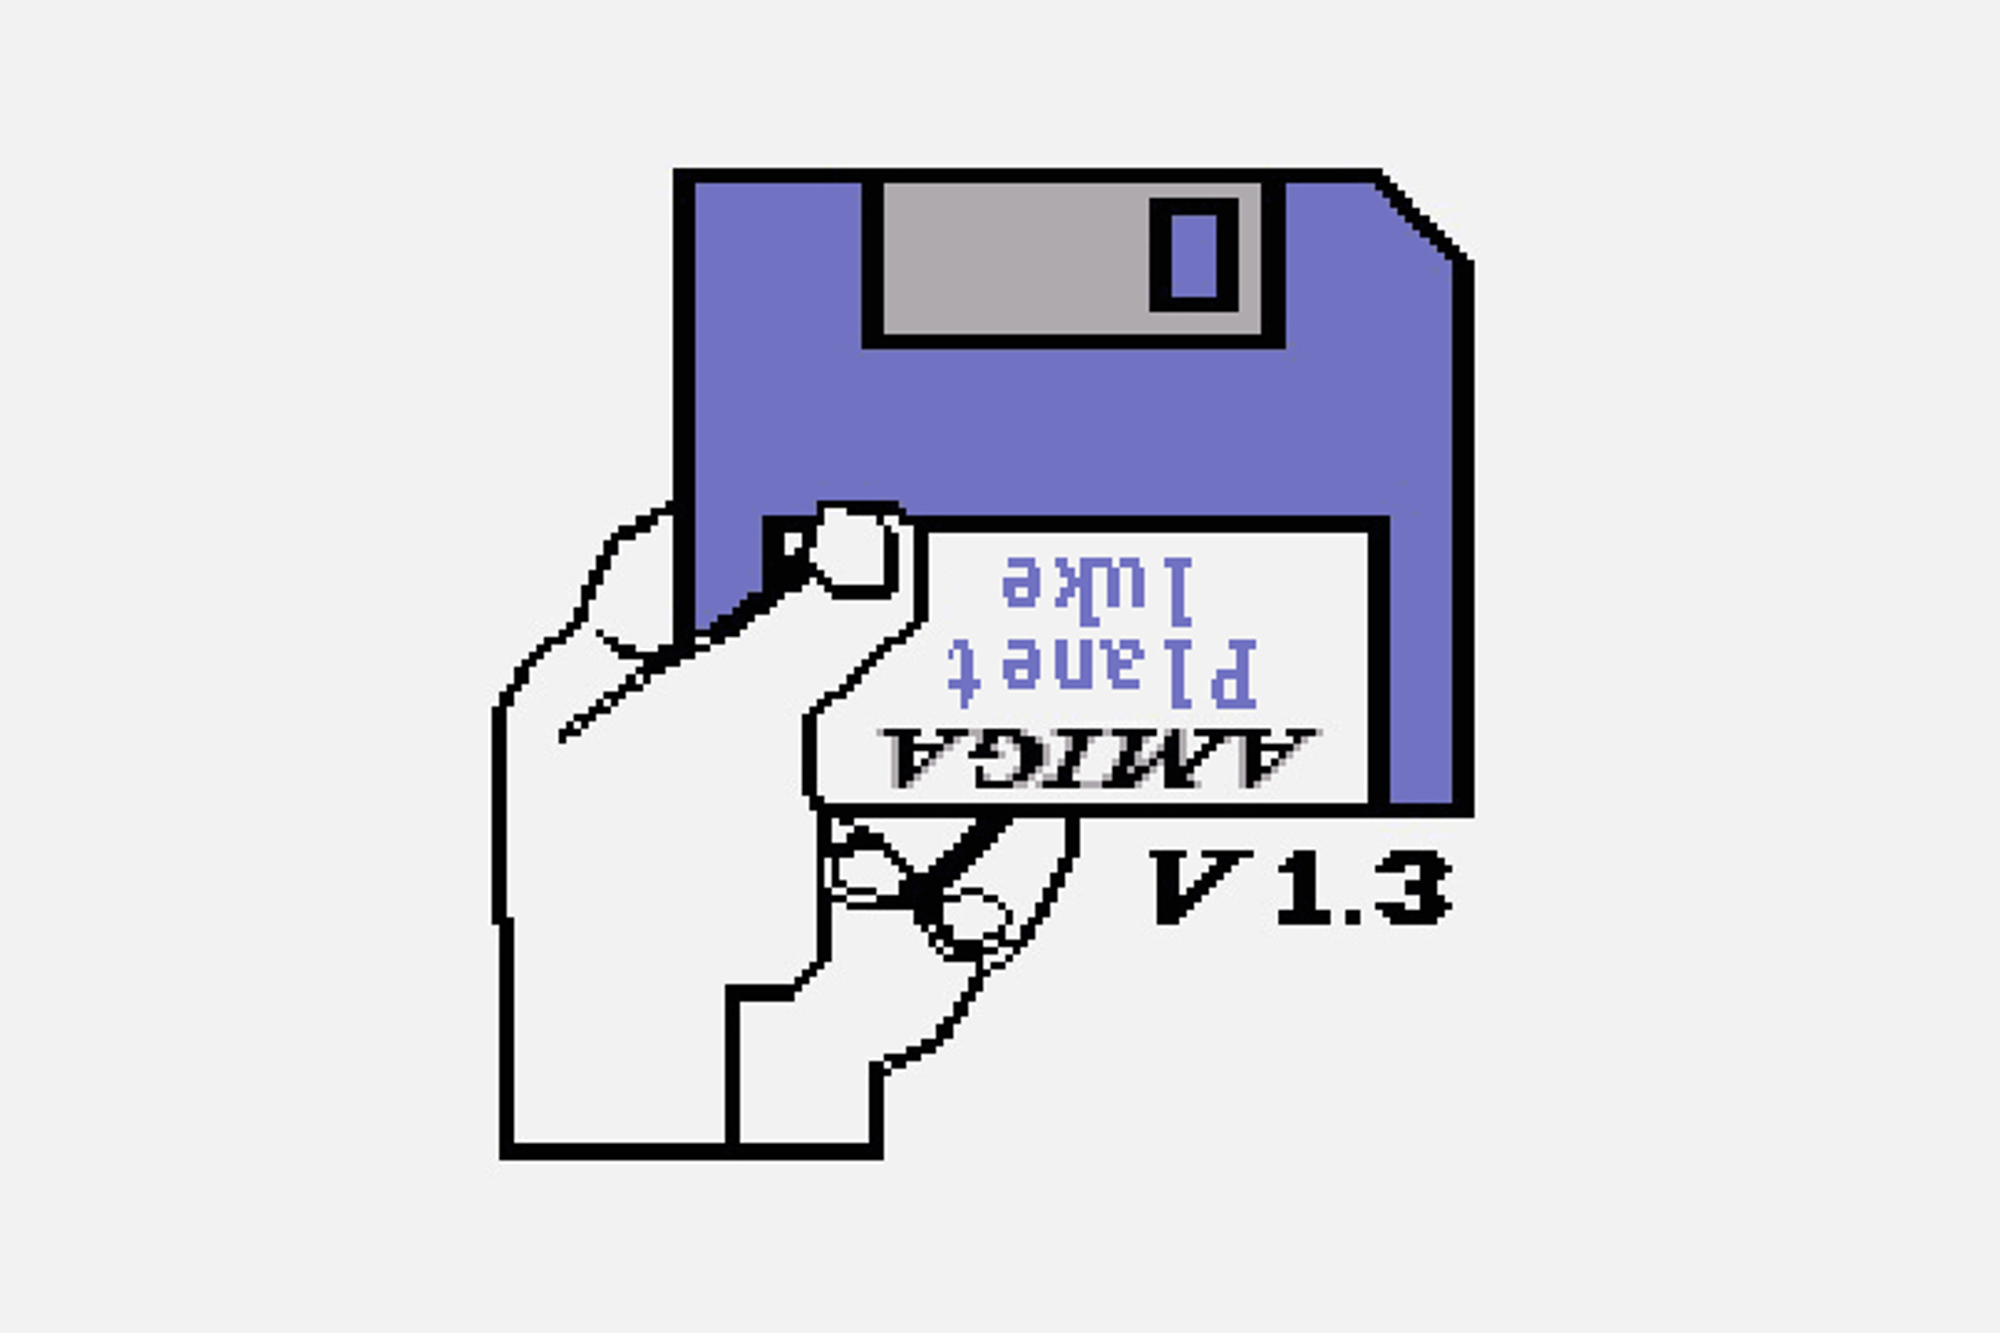 Amiga 500 boot screen